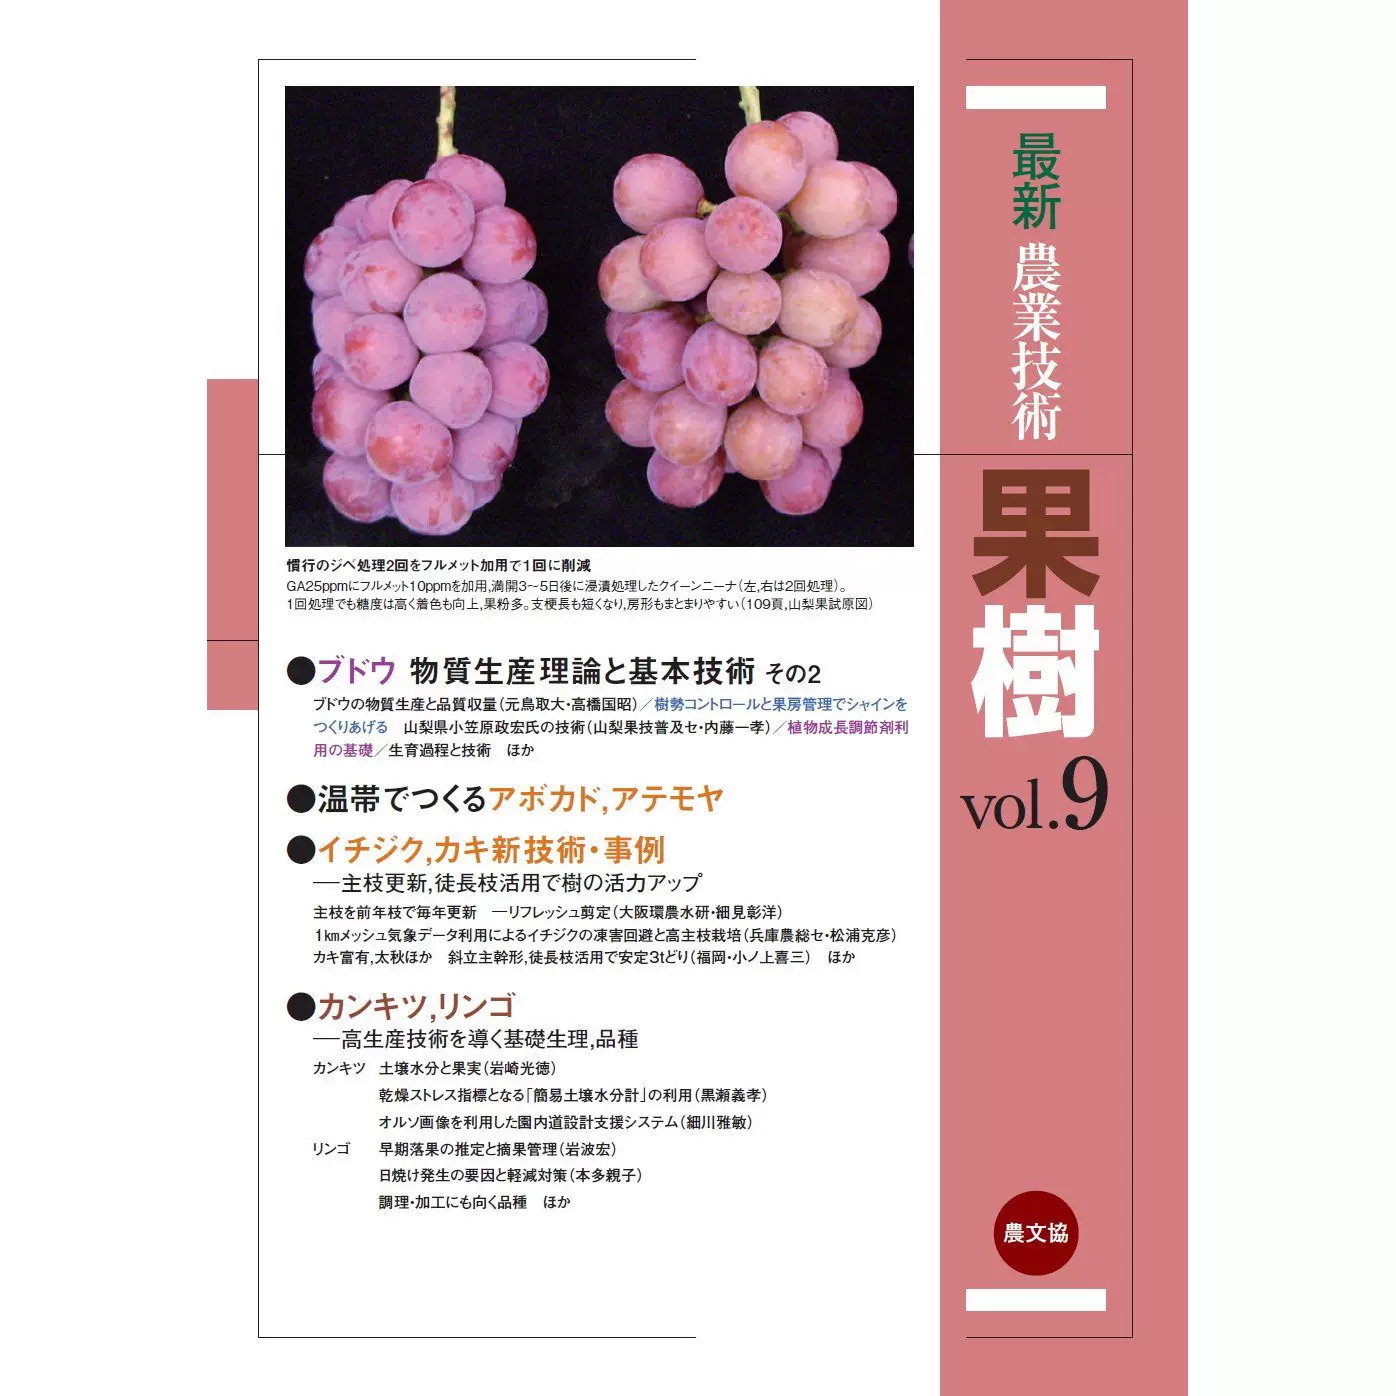 全年訂閱《盆栽世界》日本盆景設計雜誌羅漢鬆畫冊日式園藝園林- Taobao